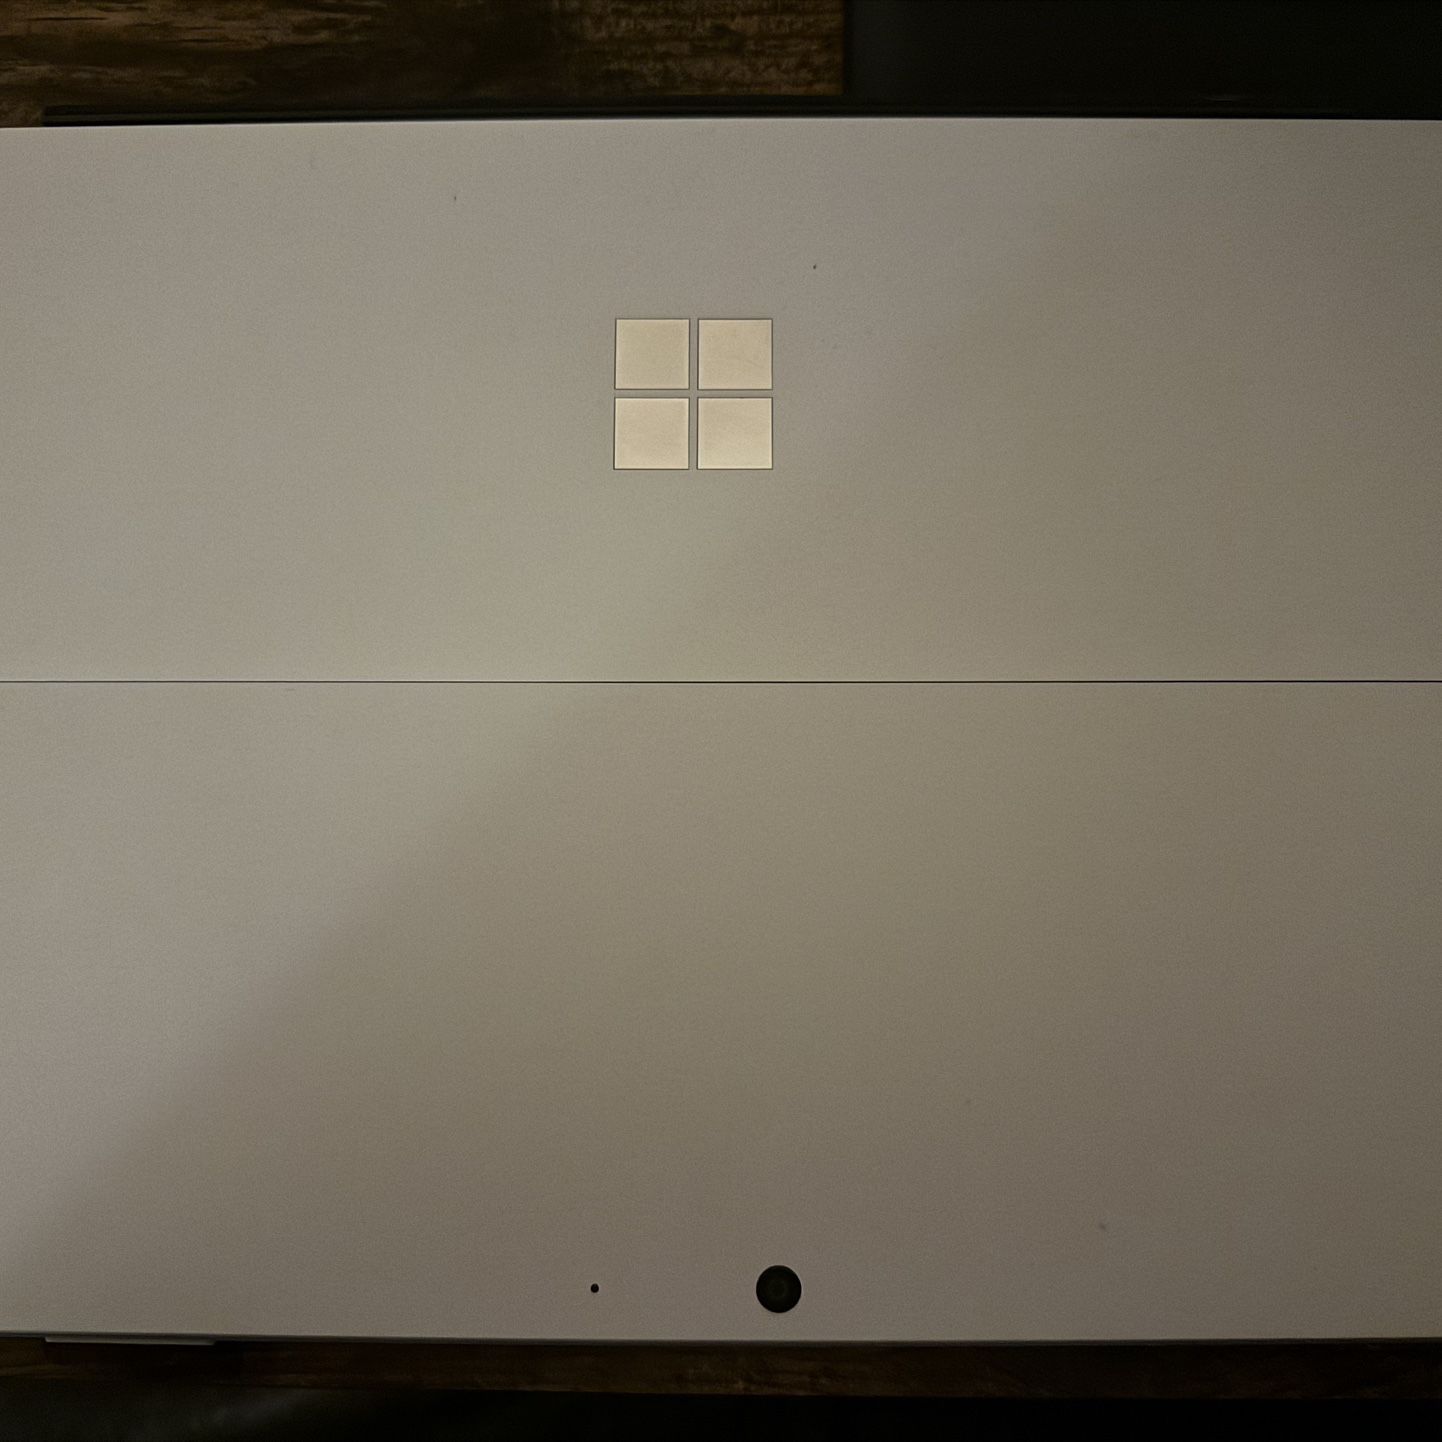 Microsoft Surface Pro 7 +